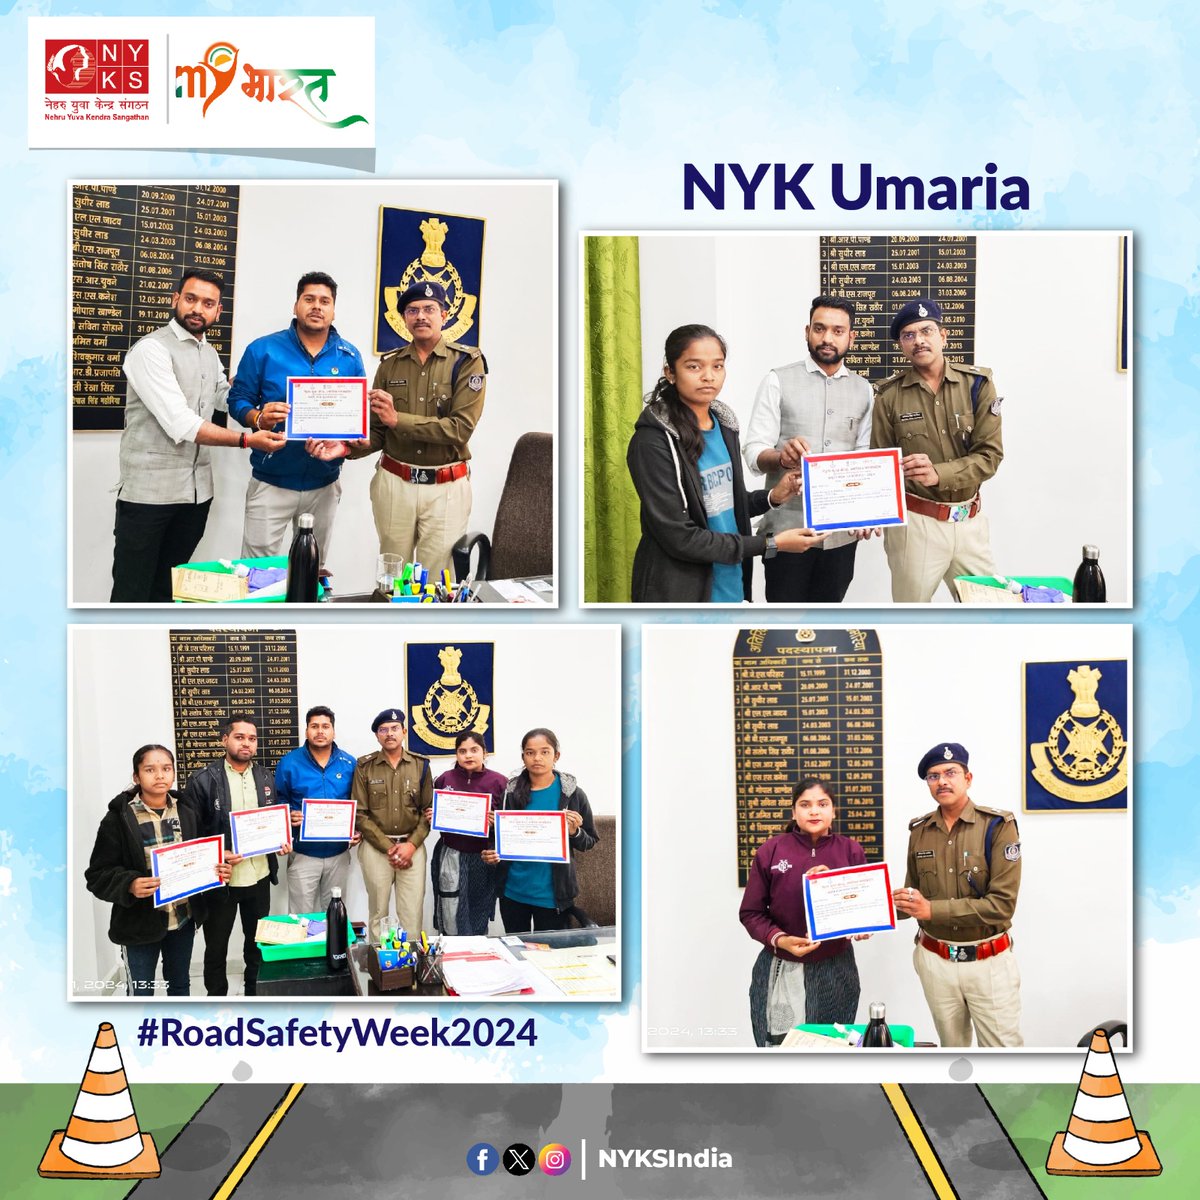 @NykUmaria व उमरिया पुलिस के द्वारा आयोजित राष्ट्रीय सड़क सुरक्षा सप्ताह में सहभागिता निभाने वाले स्वयंसेवकों को अतिरिक्त पुलिस अधीक्षक श्री प्रतिपाल सिंह महोबिया व जिला युवा अधिकारी आदित्य सिंह के द्वारा प्रशस्ति पत्र प्रदान कर सम्मानित किया गया। #RoadSafetyWeek2024 #NYKS